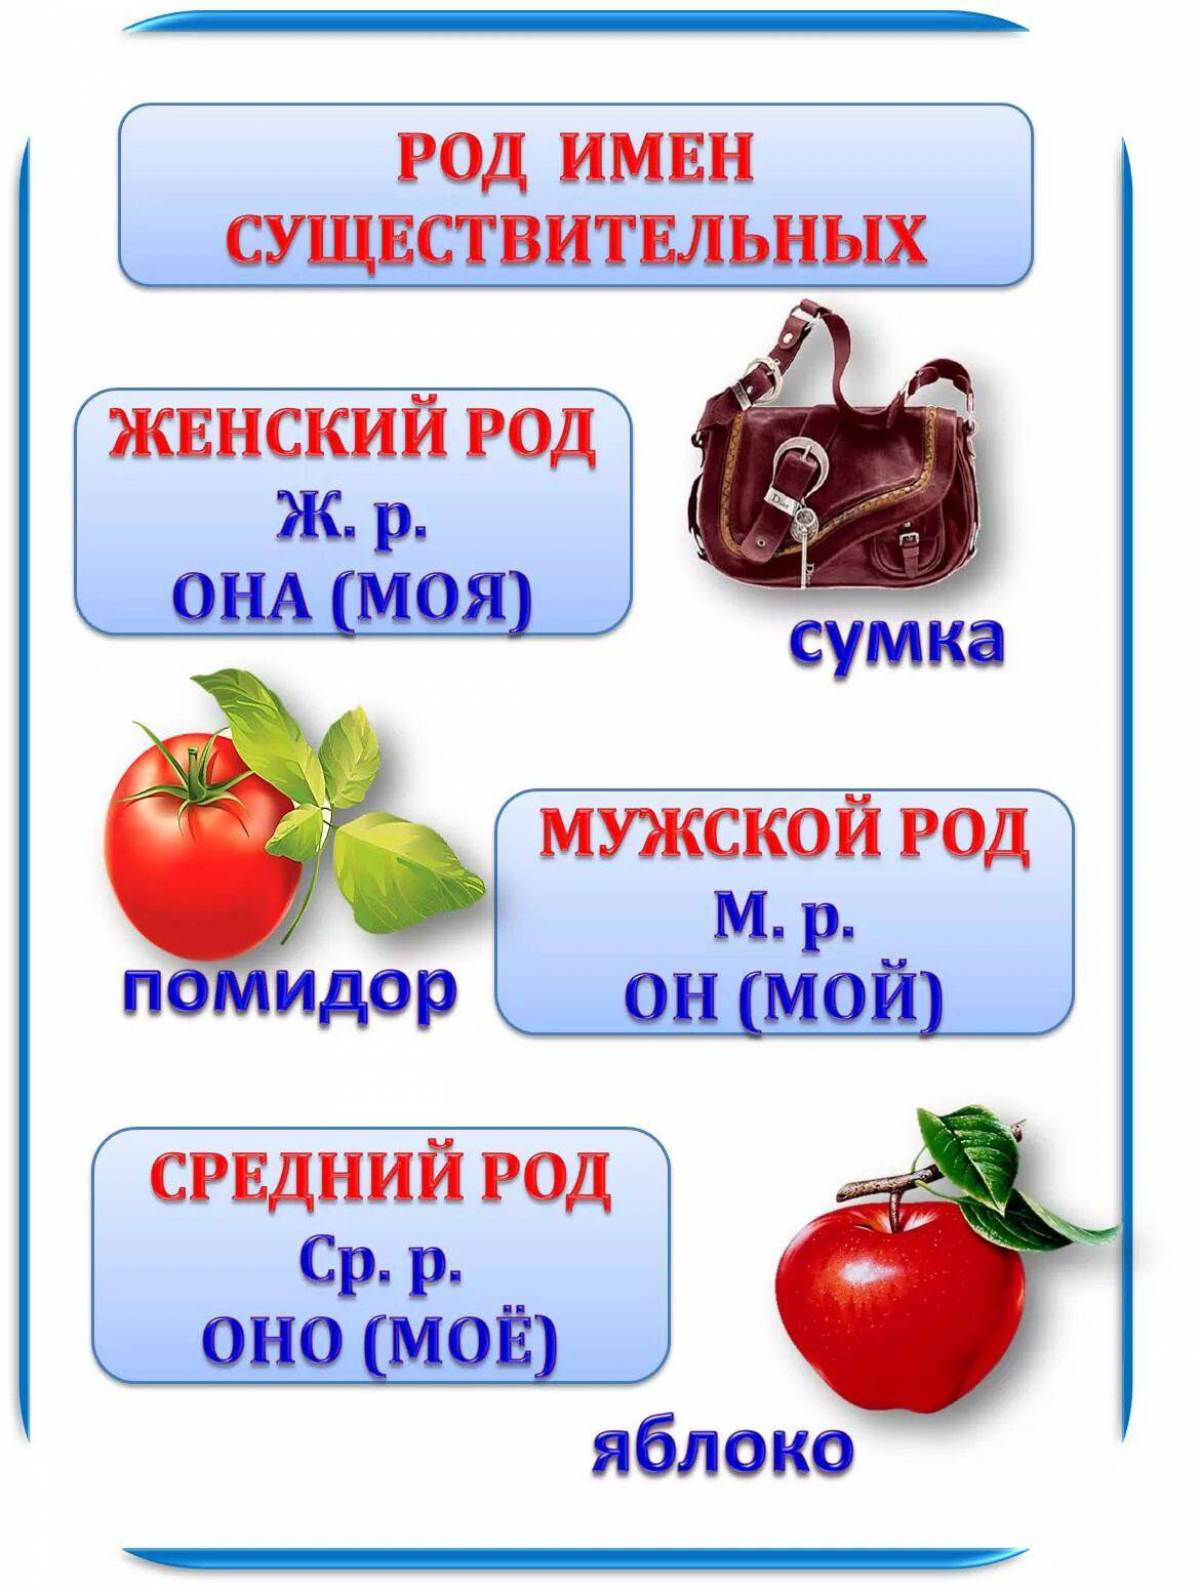 Имя род. Род имен существительных. Рид имён существительных. Род имен существительных таблица. Русский язык род имен существительных.